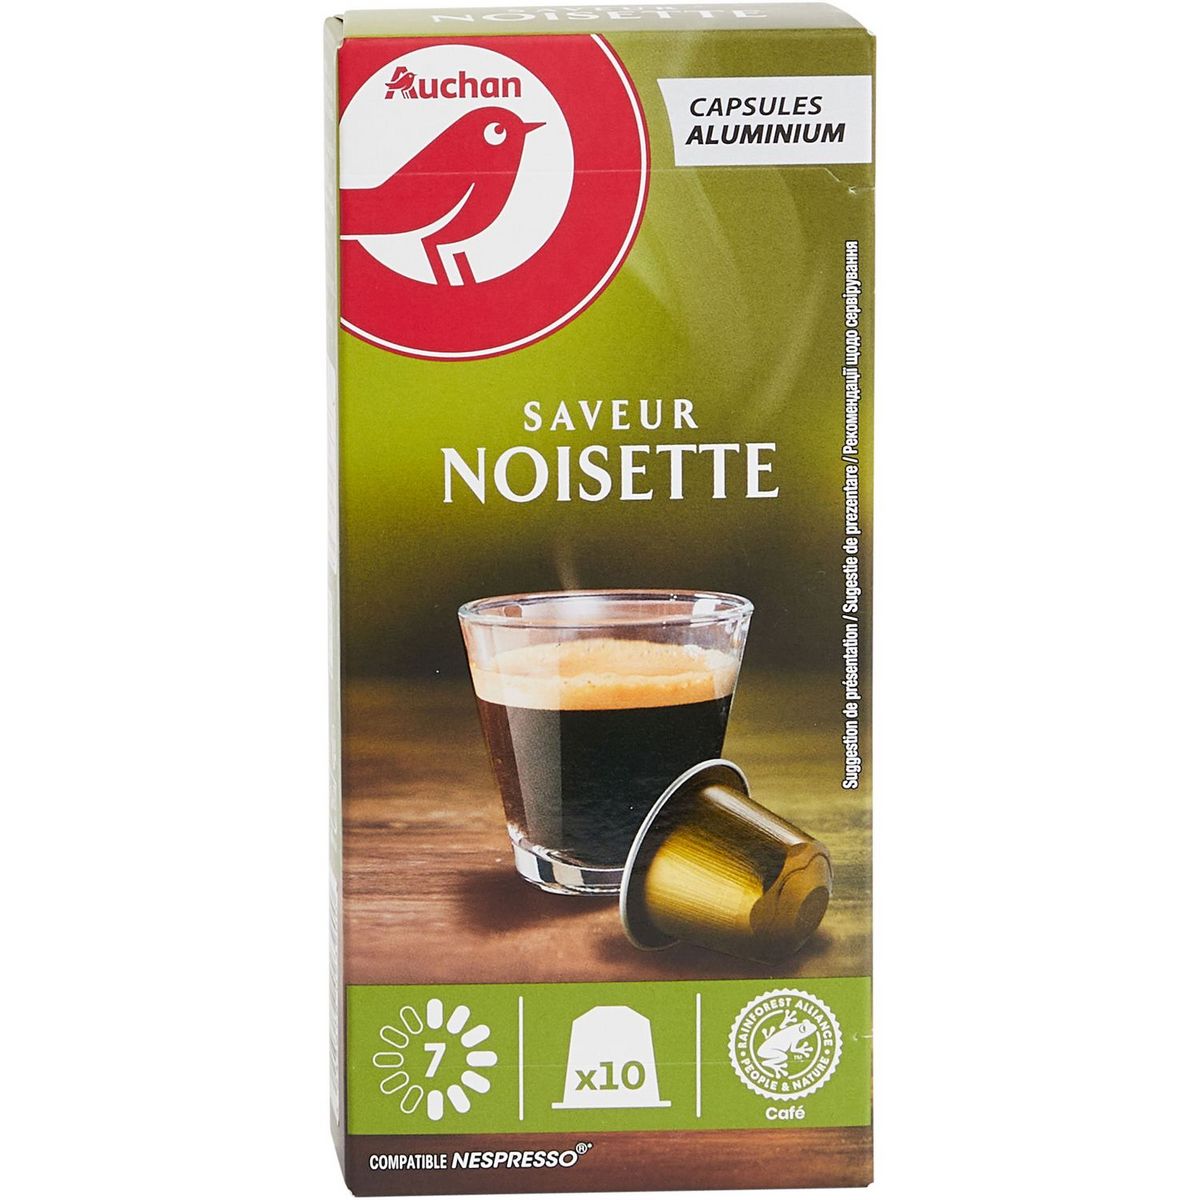 AUCHAN Capsules de café noisette intensité 7 compatibles Nespresso 10 capsules 52g